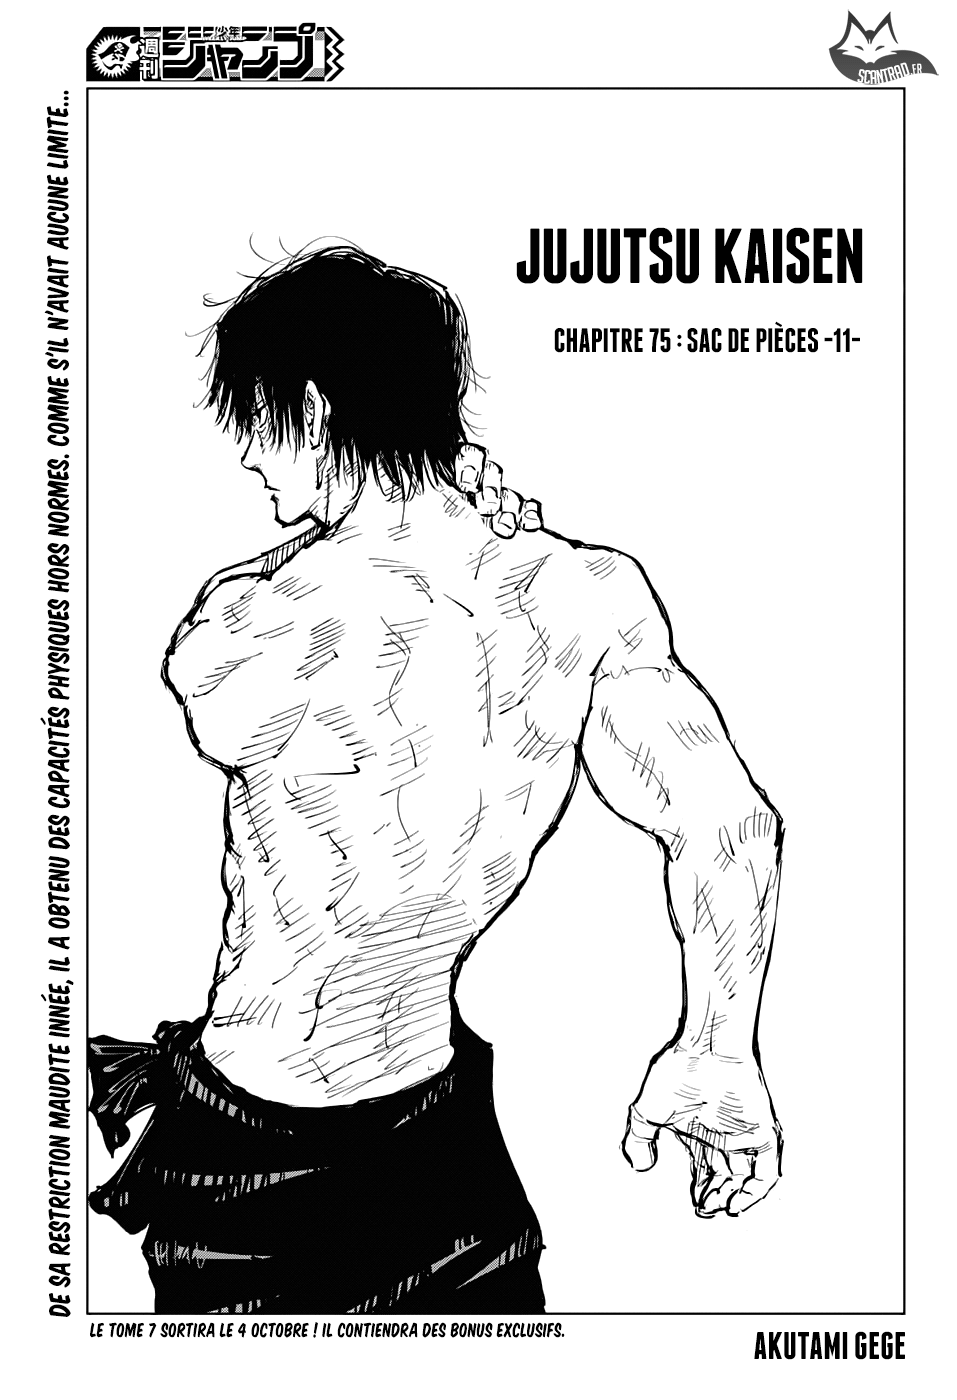 Jujutsu Kaisen: Chapter chapitre-75 - Page 1